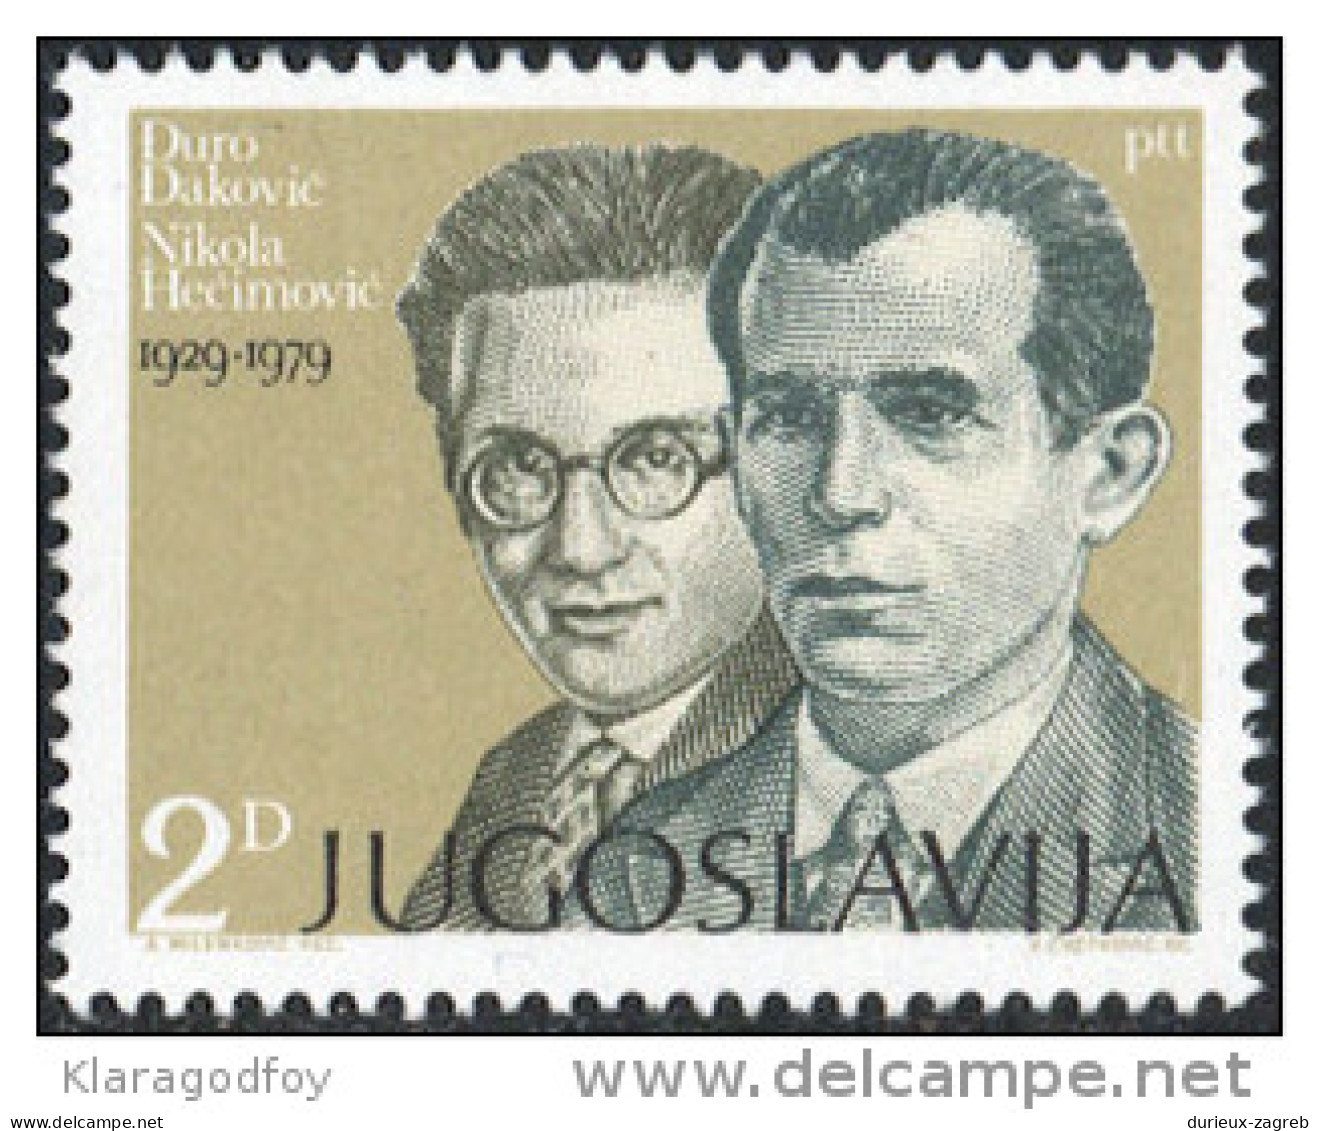 Yugoslavia 1979 Djuro Djakovic And Nikola Hecimovic MiNr 1815 MNH - Nuevos